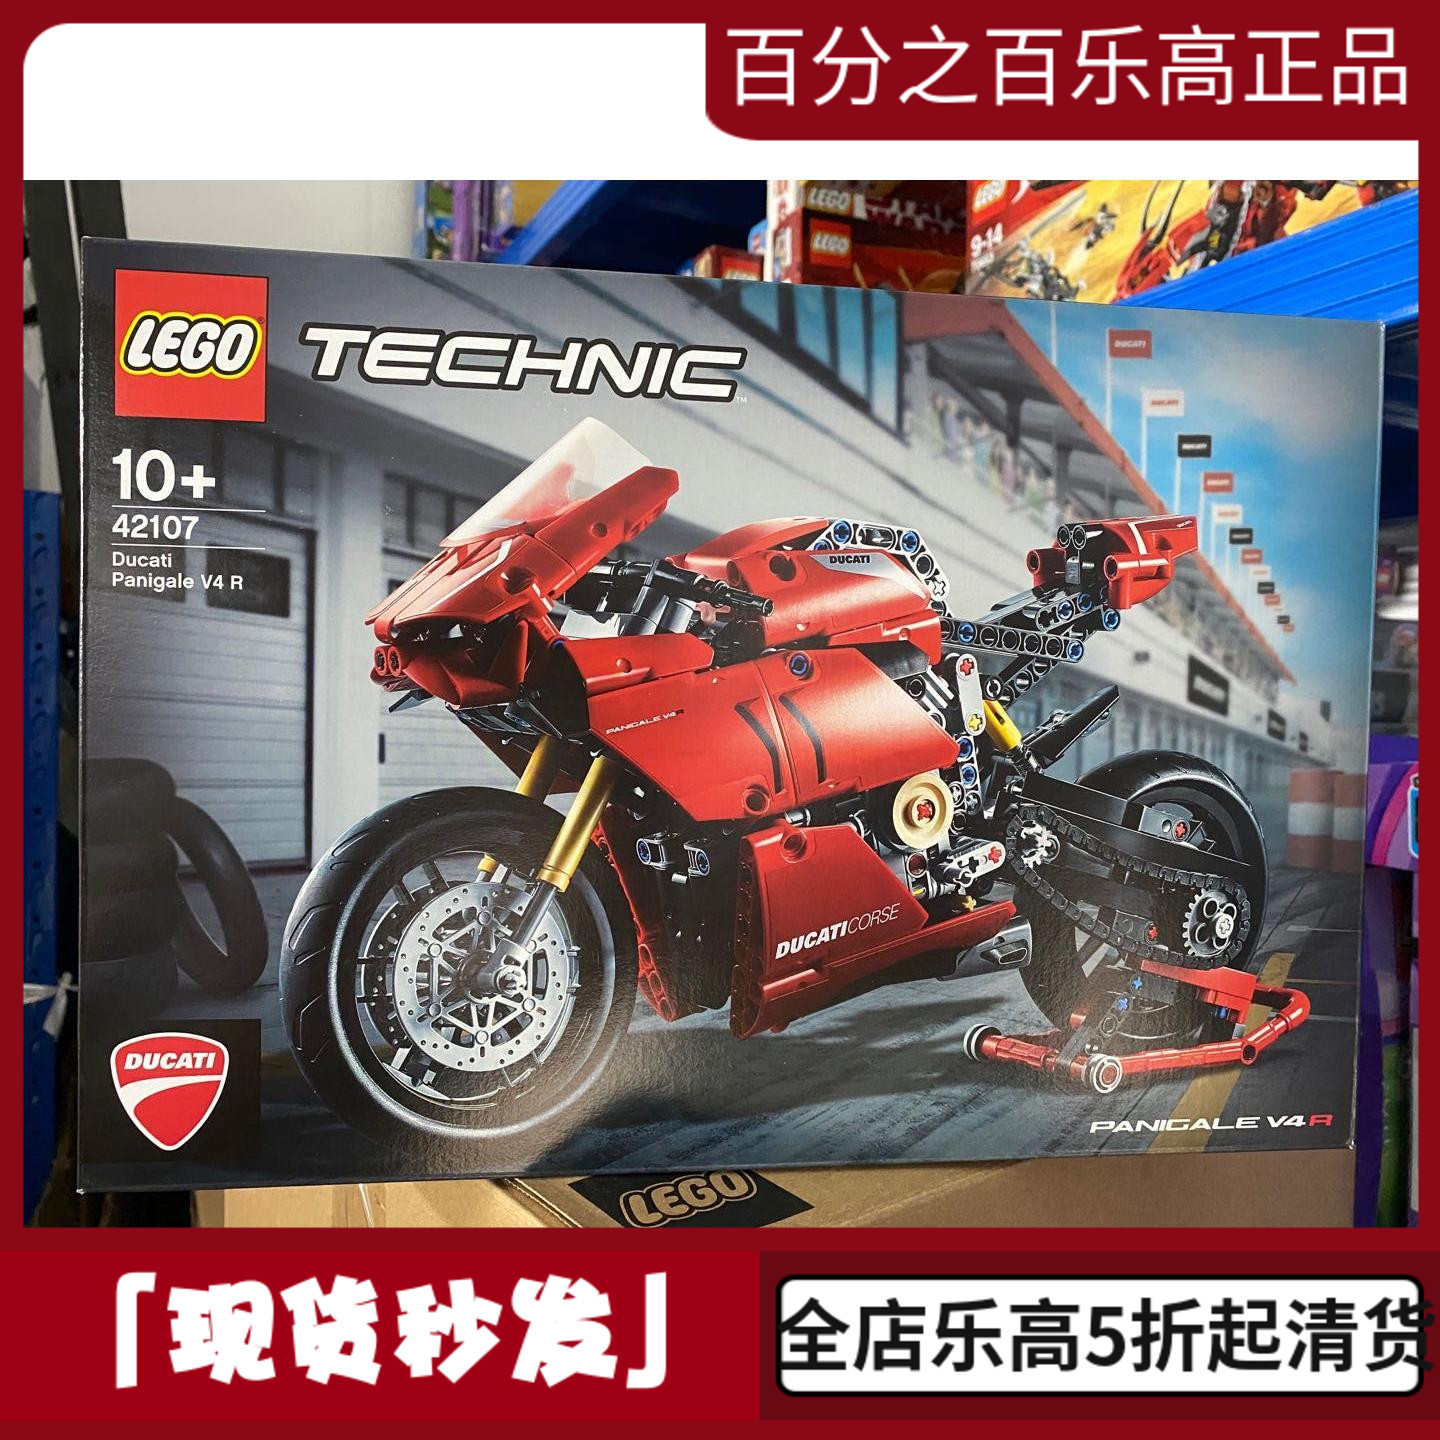 LEGO乐高42107科技系列机械组杜卡迪V4R摩托车模积木玩具礼物男孩